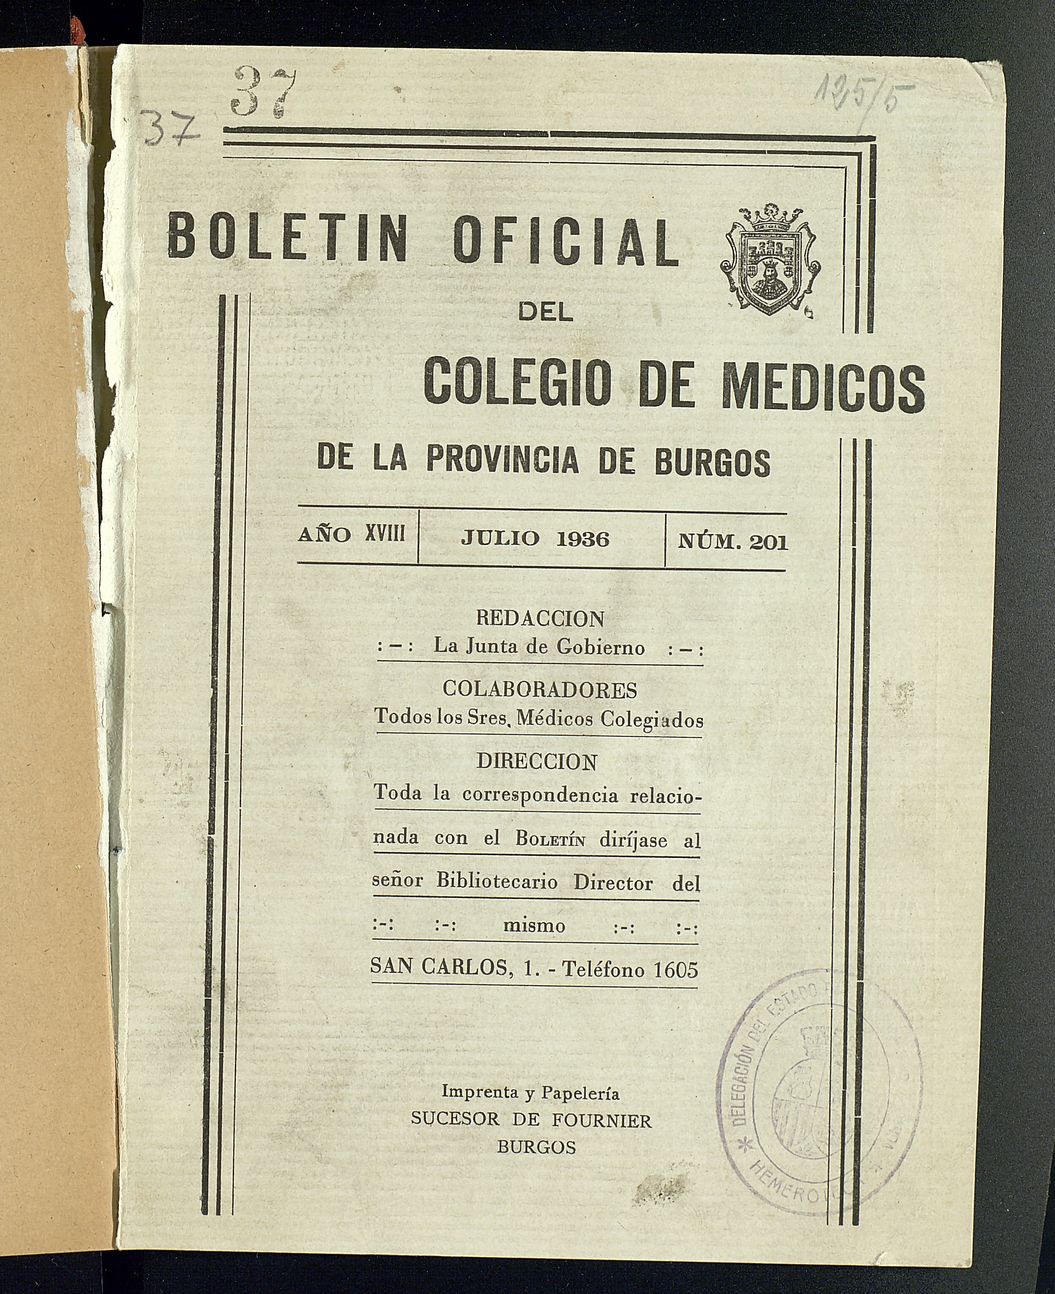 Boletín Oficial del Colegio de Médicos de la Provincia de Burgos. Julio de 1936, nº 201